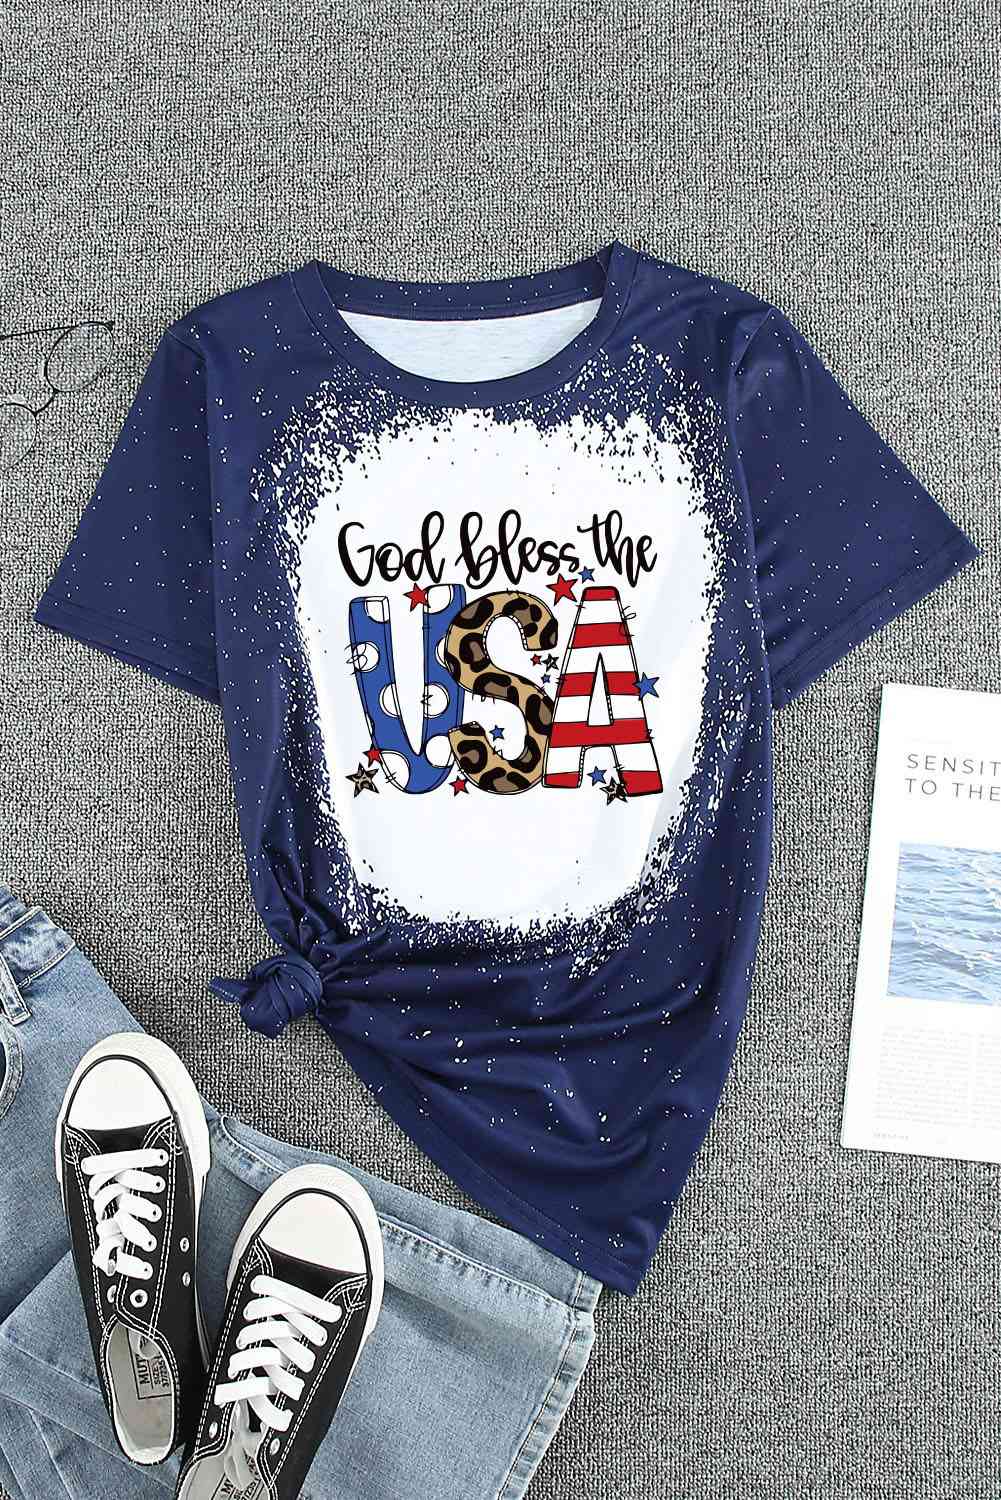 GOD BLESS THE USA Printed Tee Shirt   